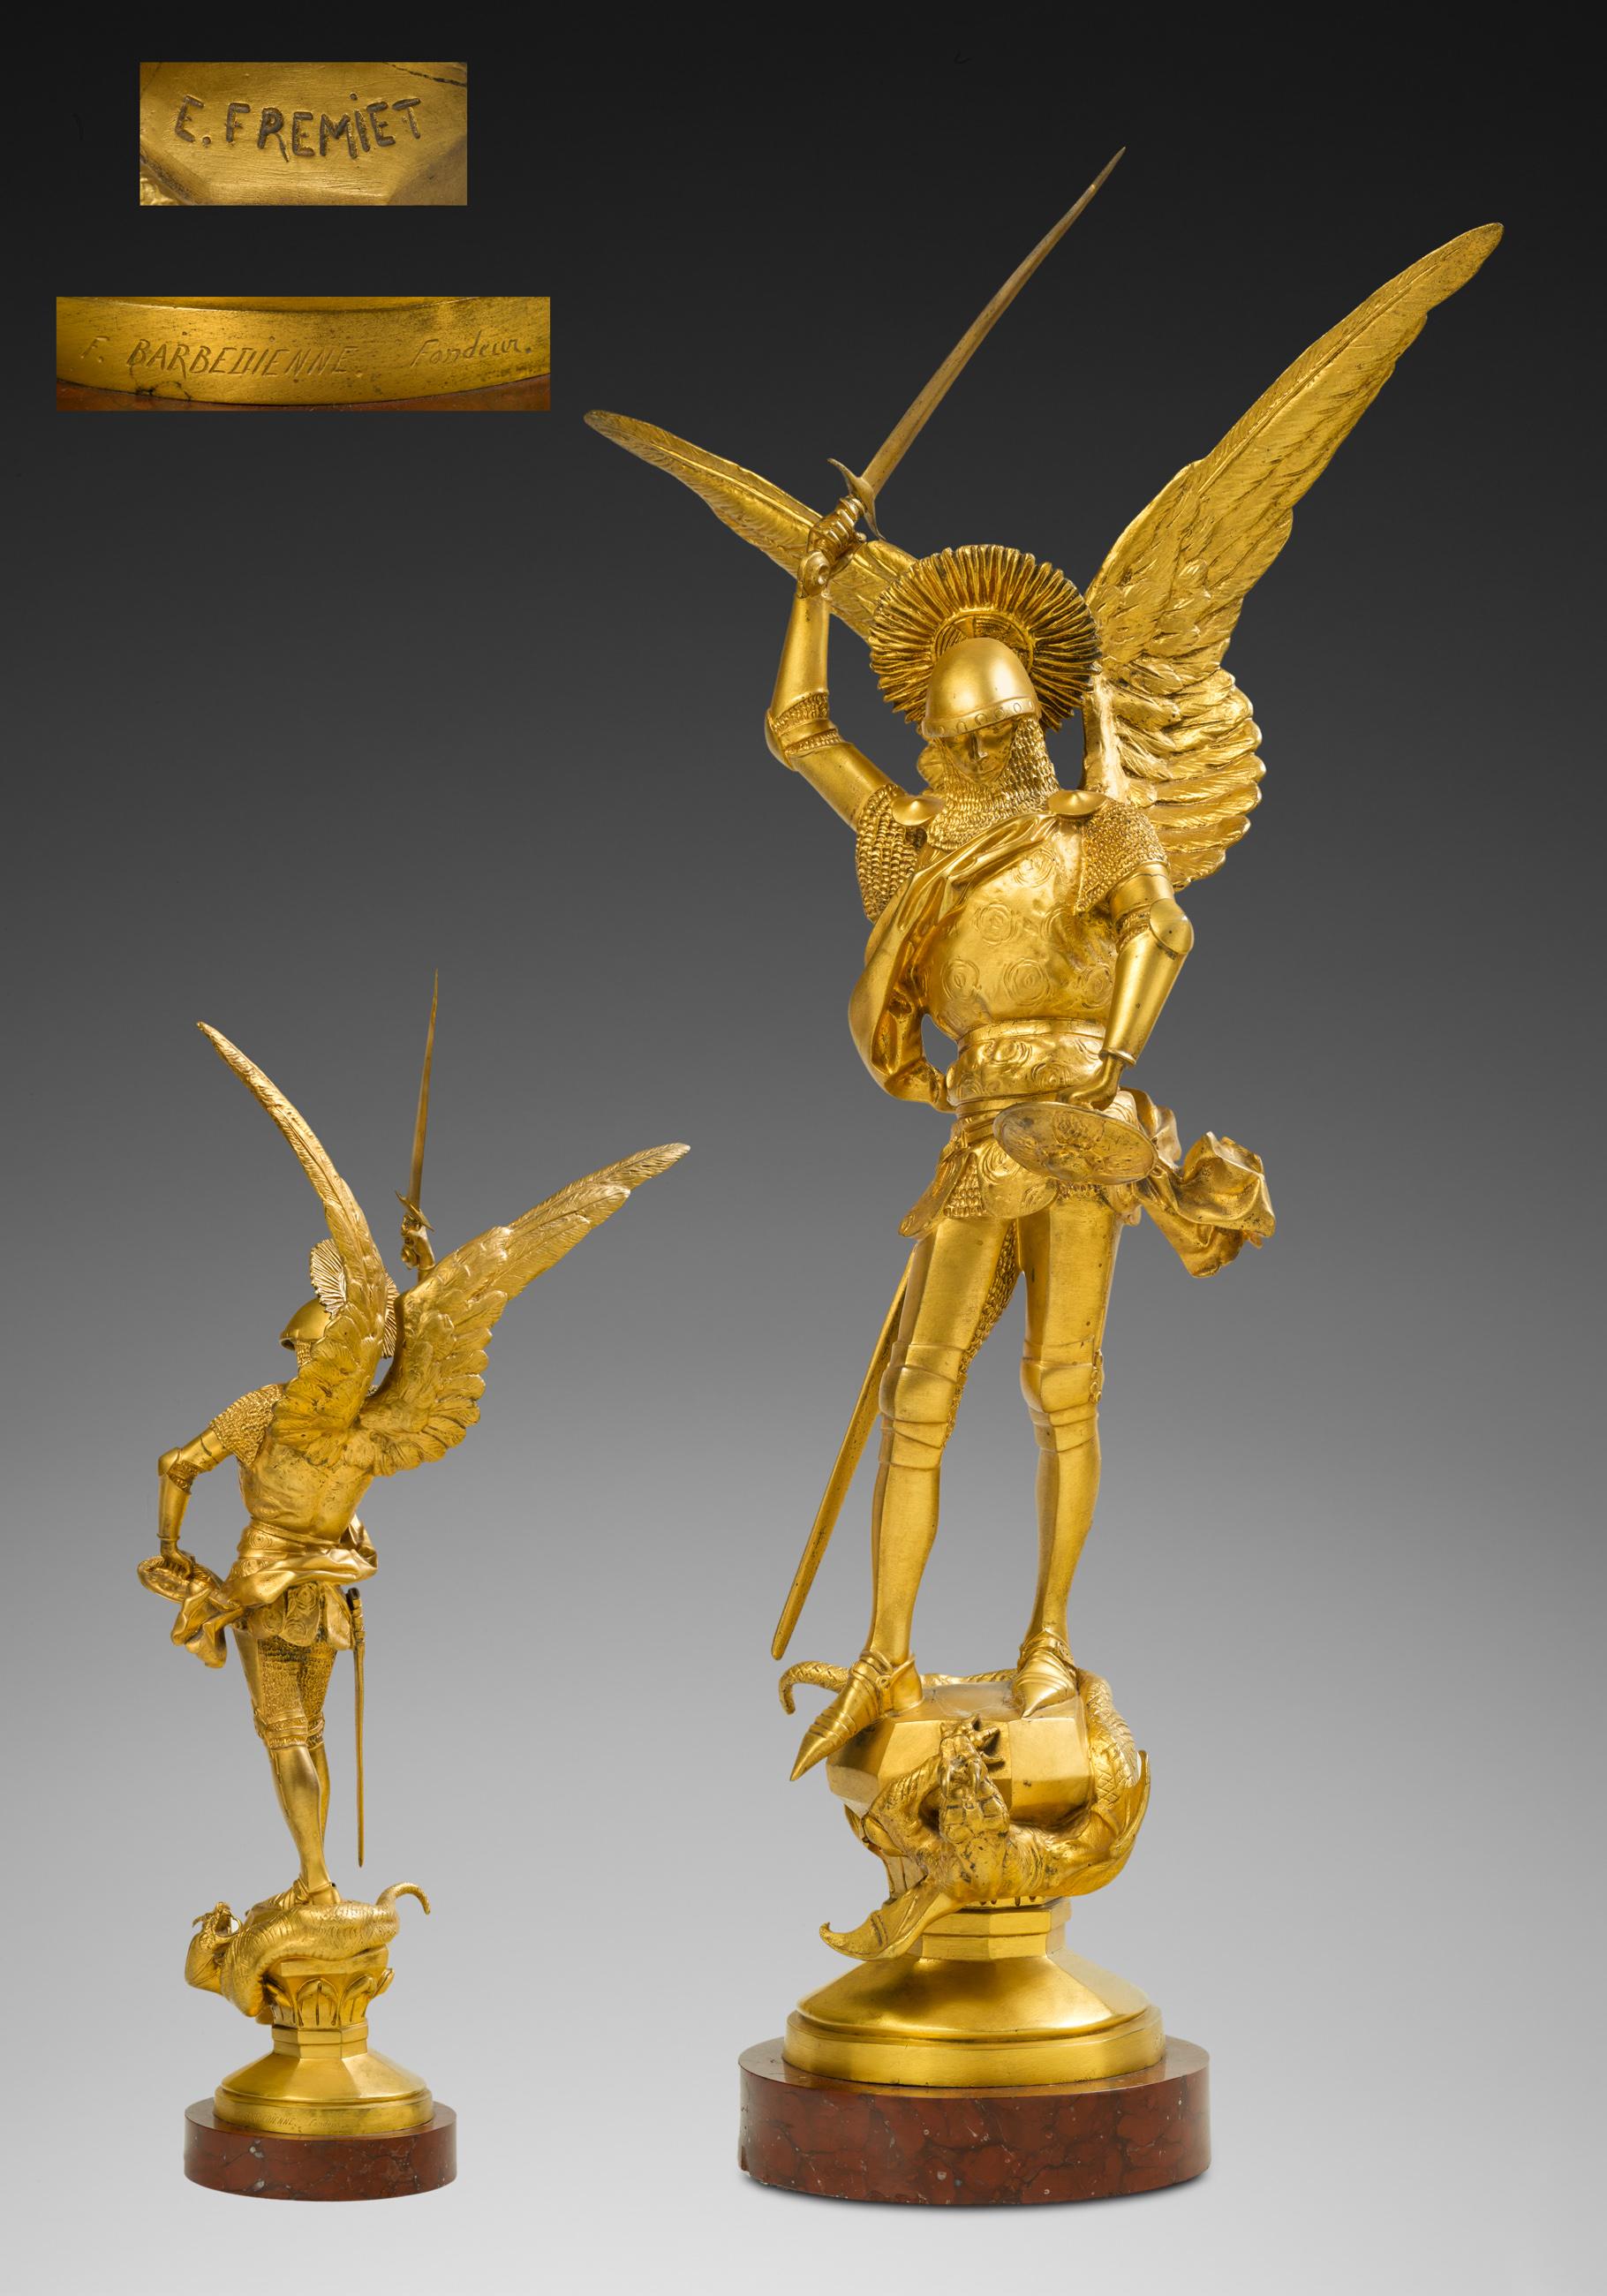 Emmanuel Fremiet Figurative Sculpture - Saint Michel et le Dragon